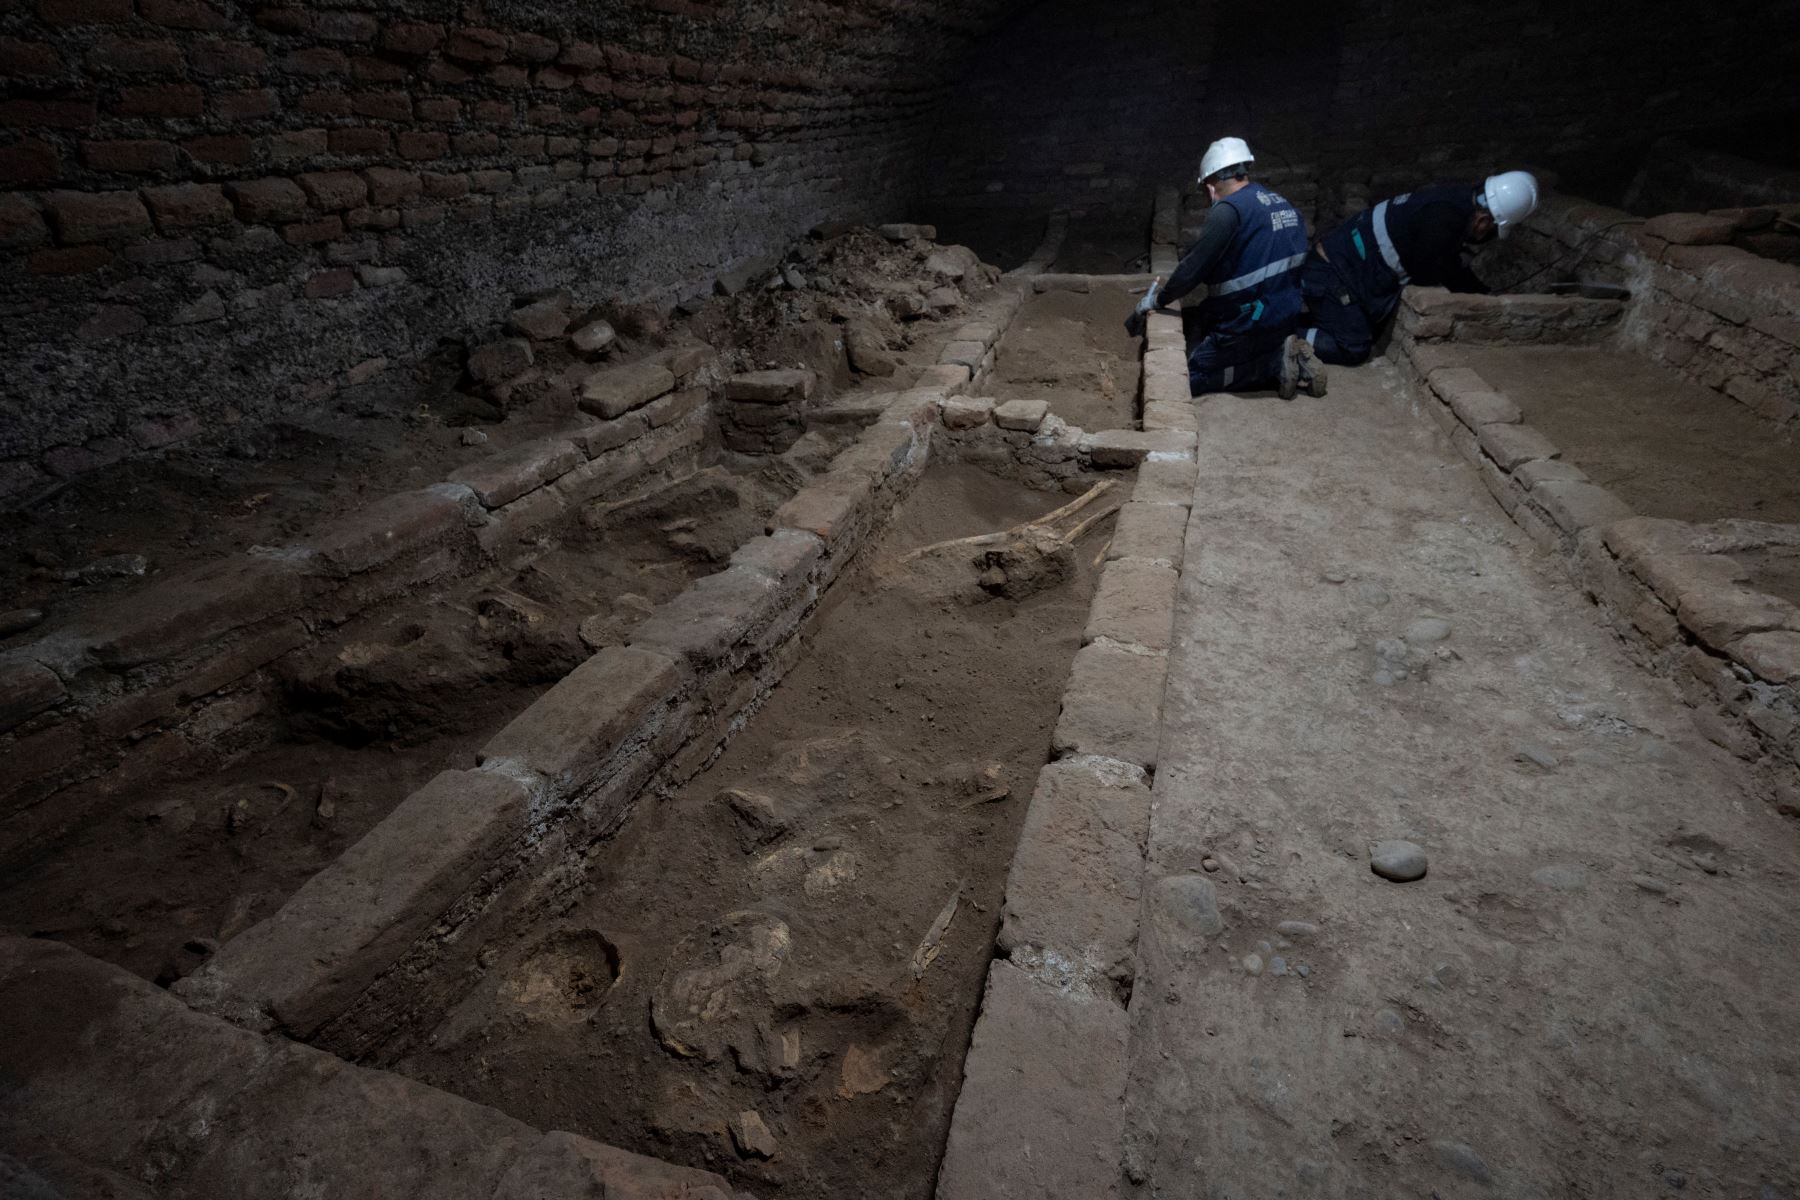 Arqueólogos peruanos descubren restos humanos en fosas comunes en catacumbas subterráneas, durante los trabajos de restauración en el Santuario de Nuestra Señora de la Soledad del siglo XVII, en el centro histórico de Lima.
Foto: AFP